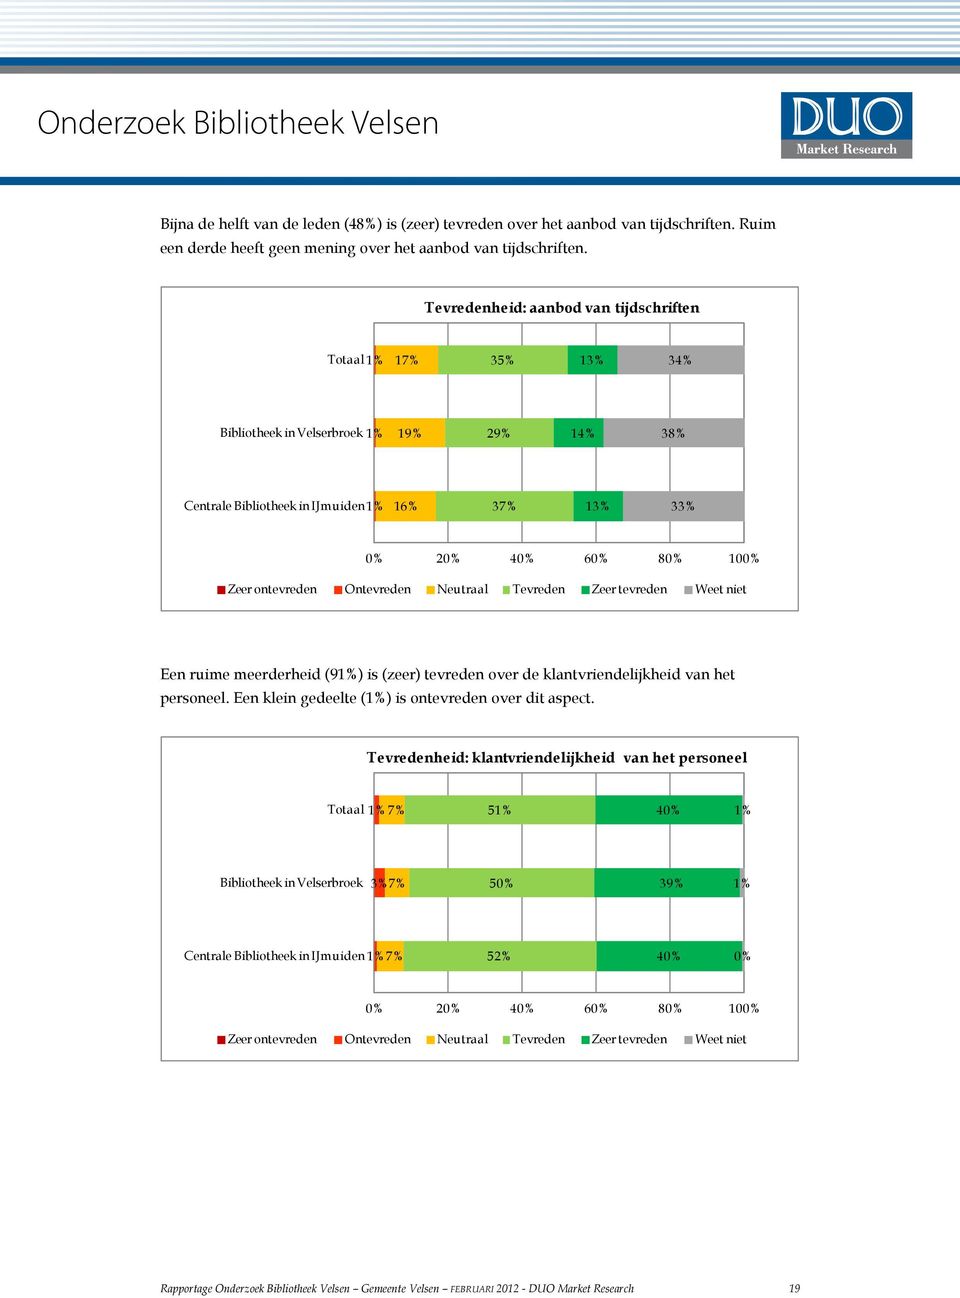 ontevreden Ontevreden Neutraal Tevreden Zeer tevreden Weet niet Een ruime meerderheid (91%) is (zeer) tevreden over de klantvriendelijkheid van het personeel.